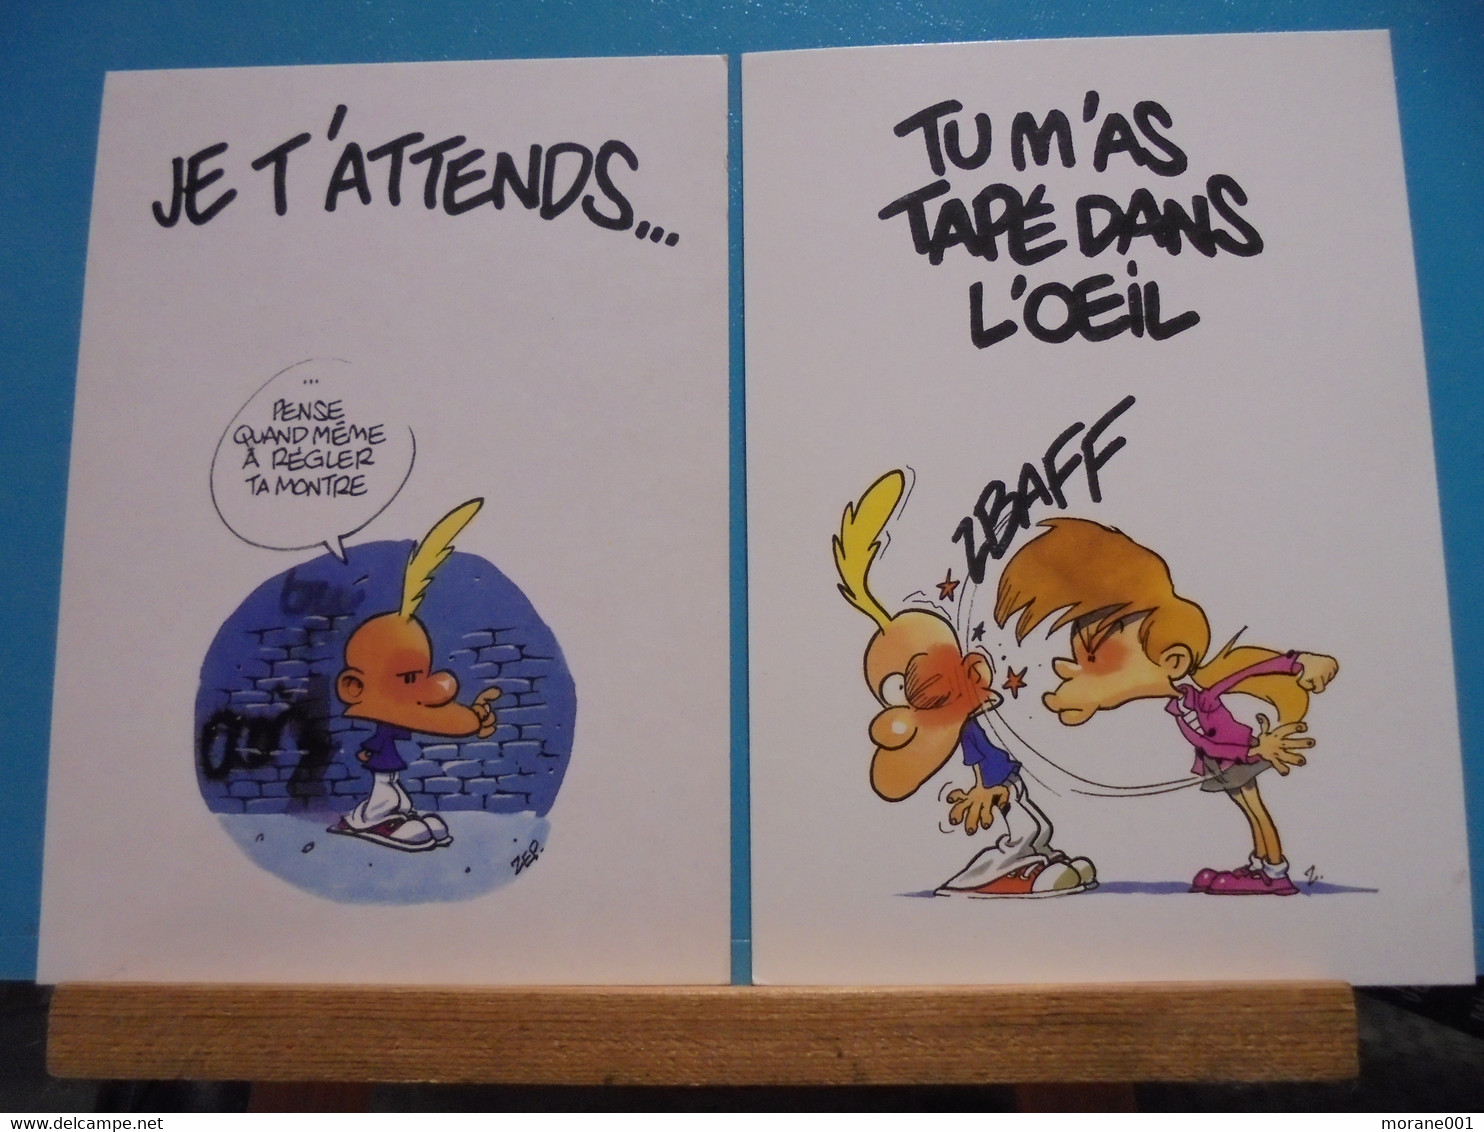 2  Cartes Postales  Titeuf Illustrées Par Zep - Titeuf